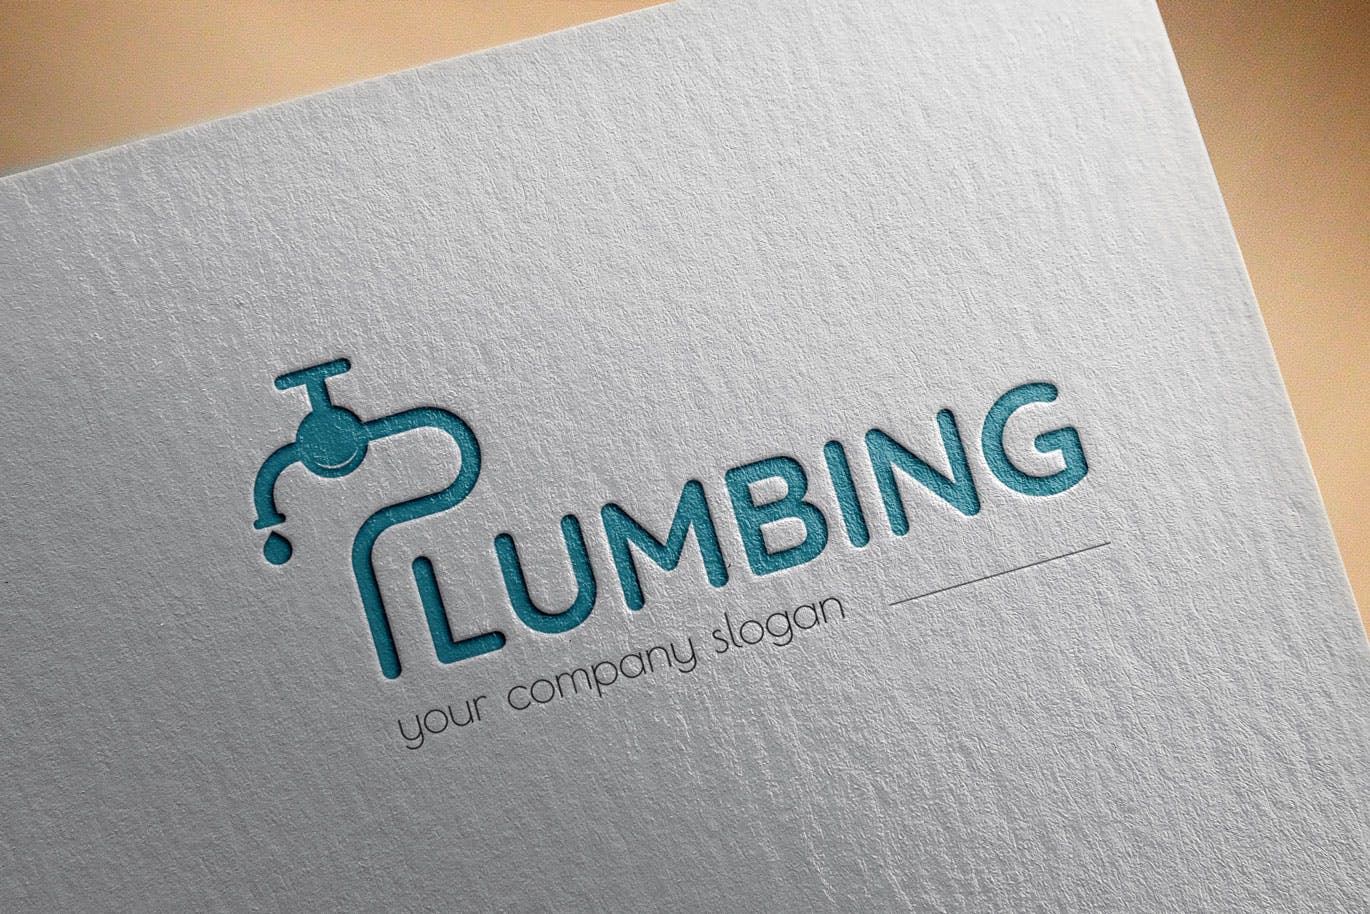 字母P图形供水设施品牌Logo设计第一素材精选模板 Plumbing Business Logo Template插图(2)